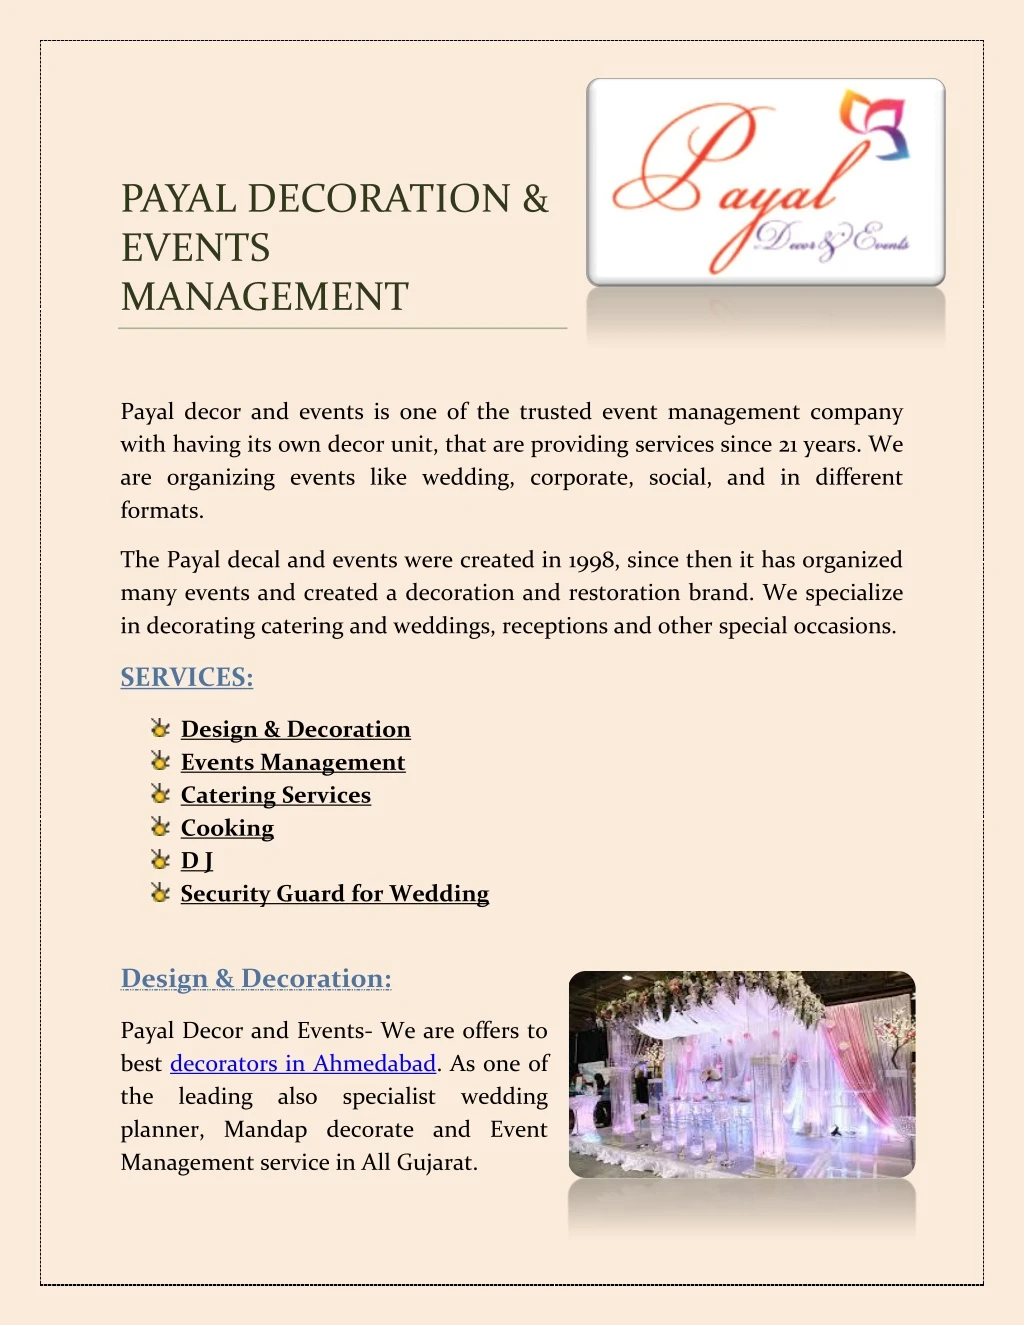 payal decoration events management